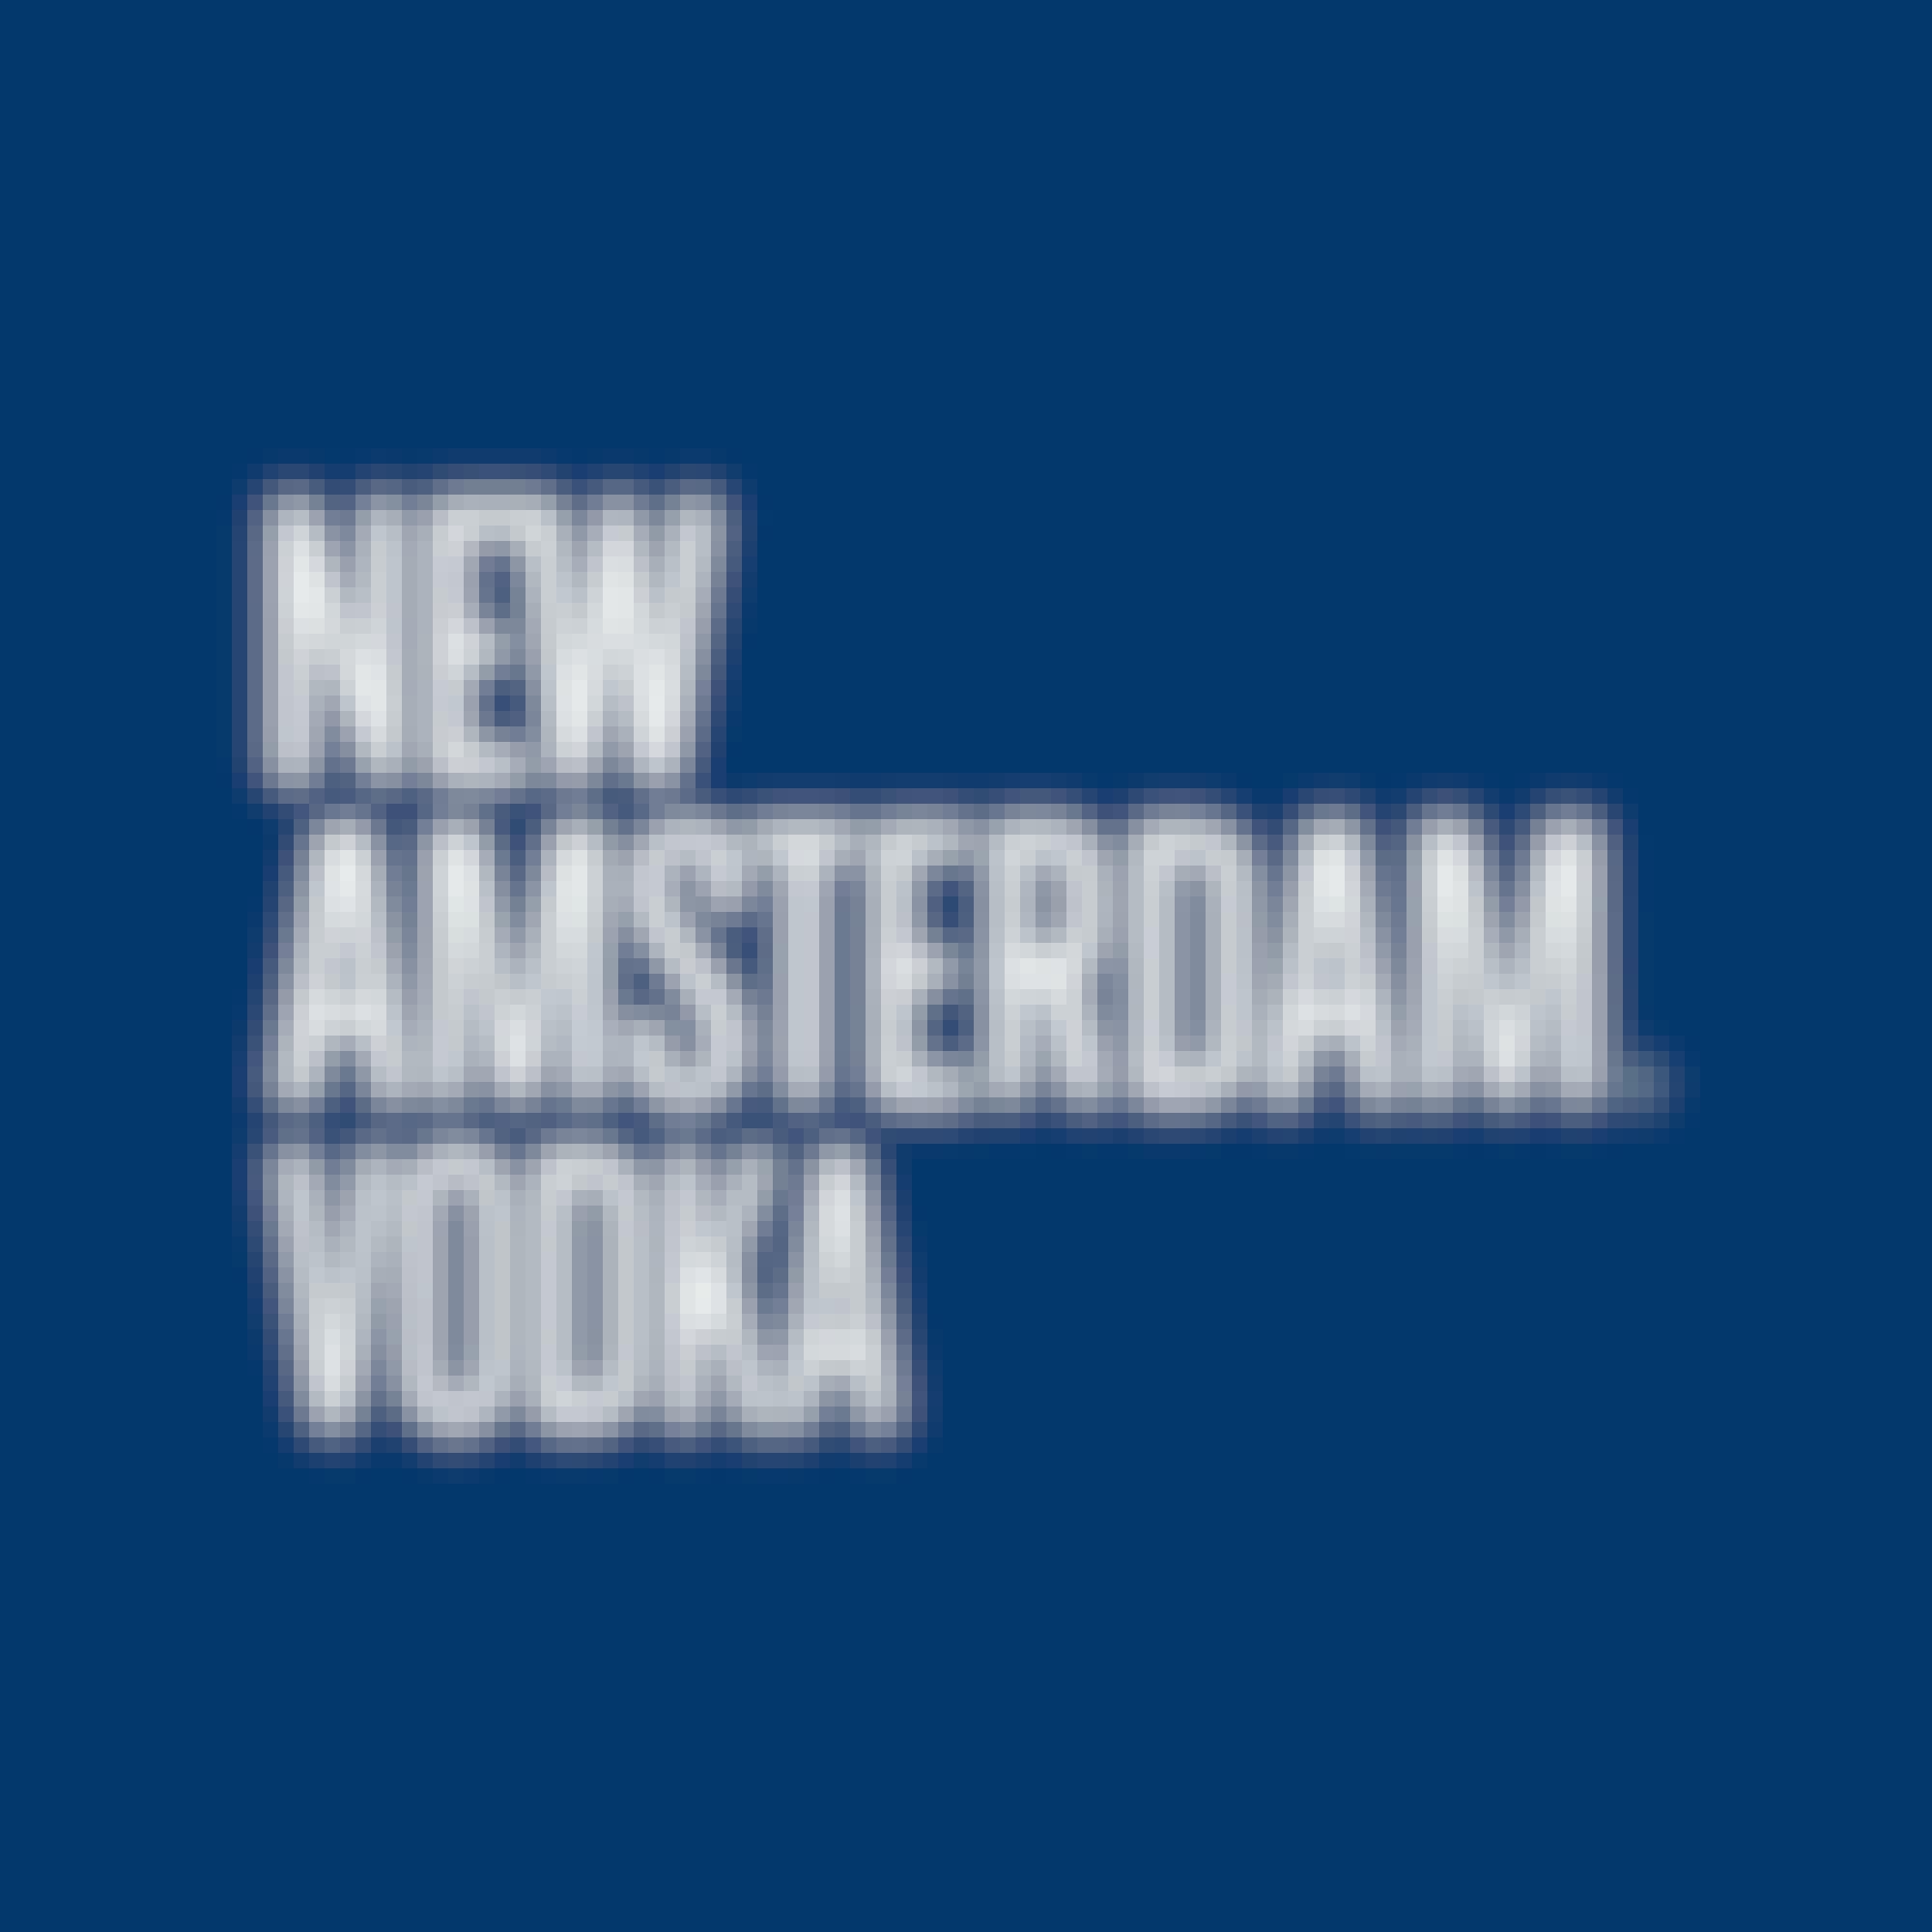 New Amsterdam Grapefruit Vodka 750ml